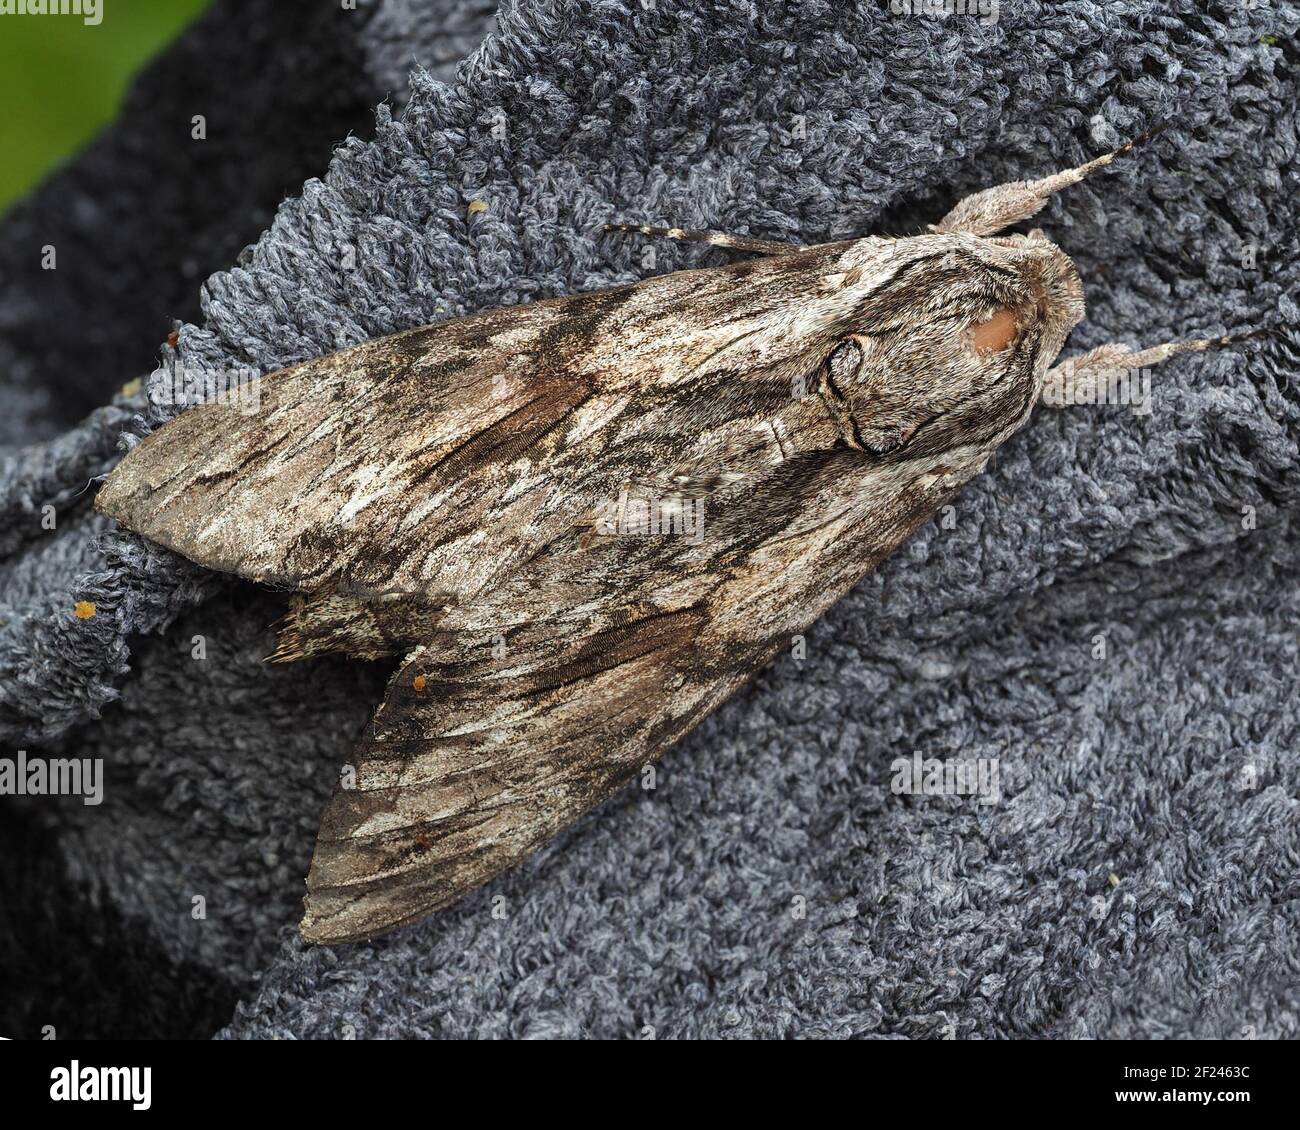 Le Moth de Convolvulus Hawk (Agrius convolvuli) est au repos sur un vêtement. Tipperary, Irlande Banque D'Images